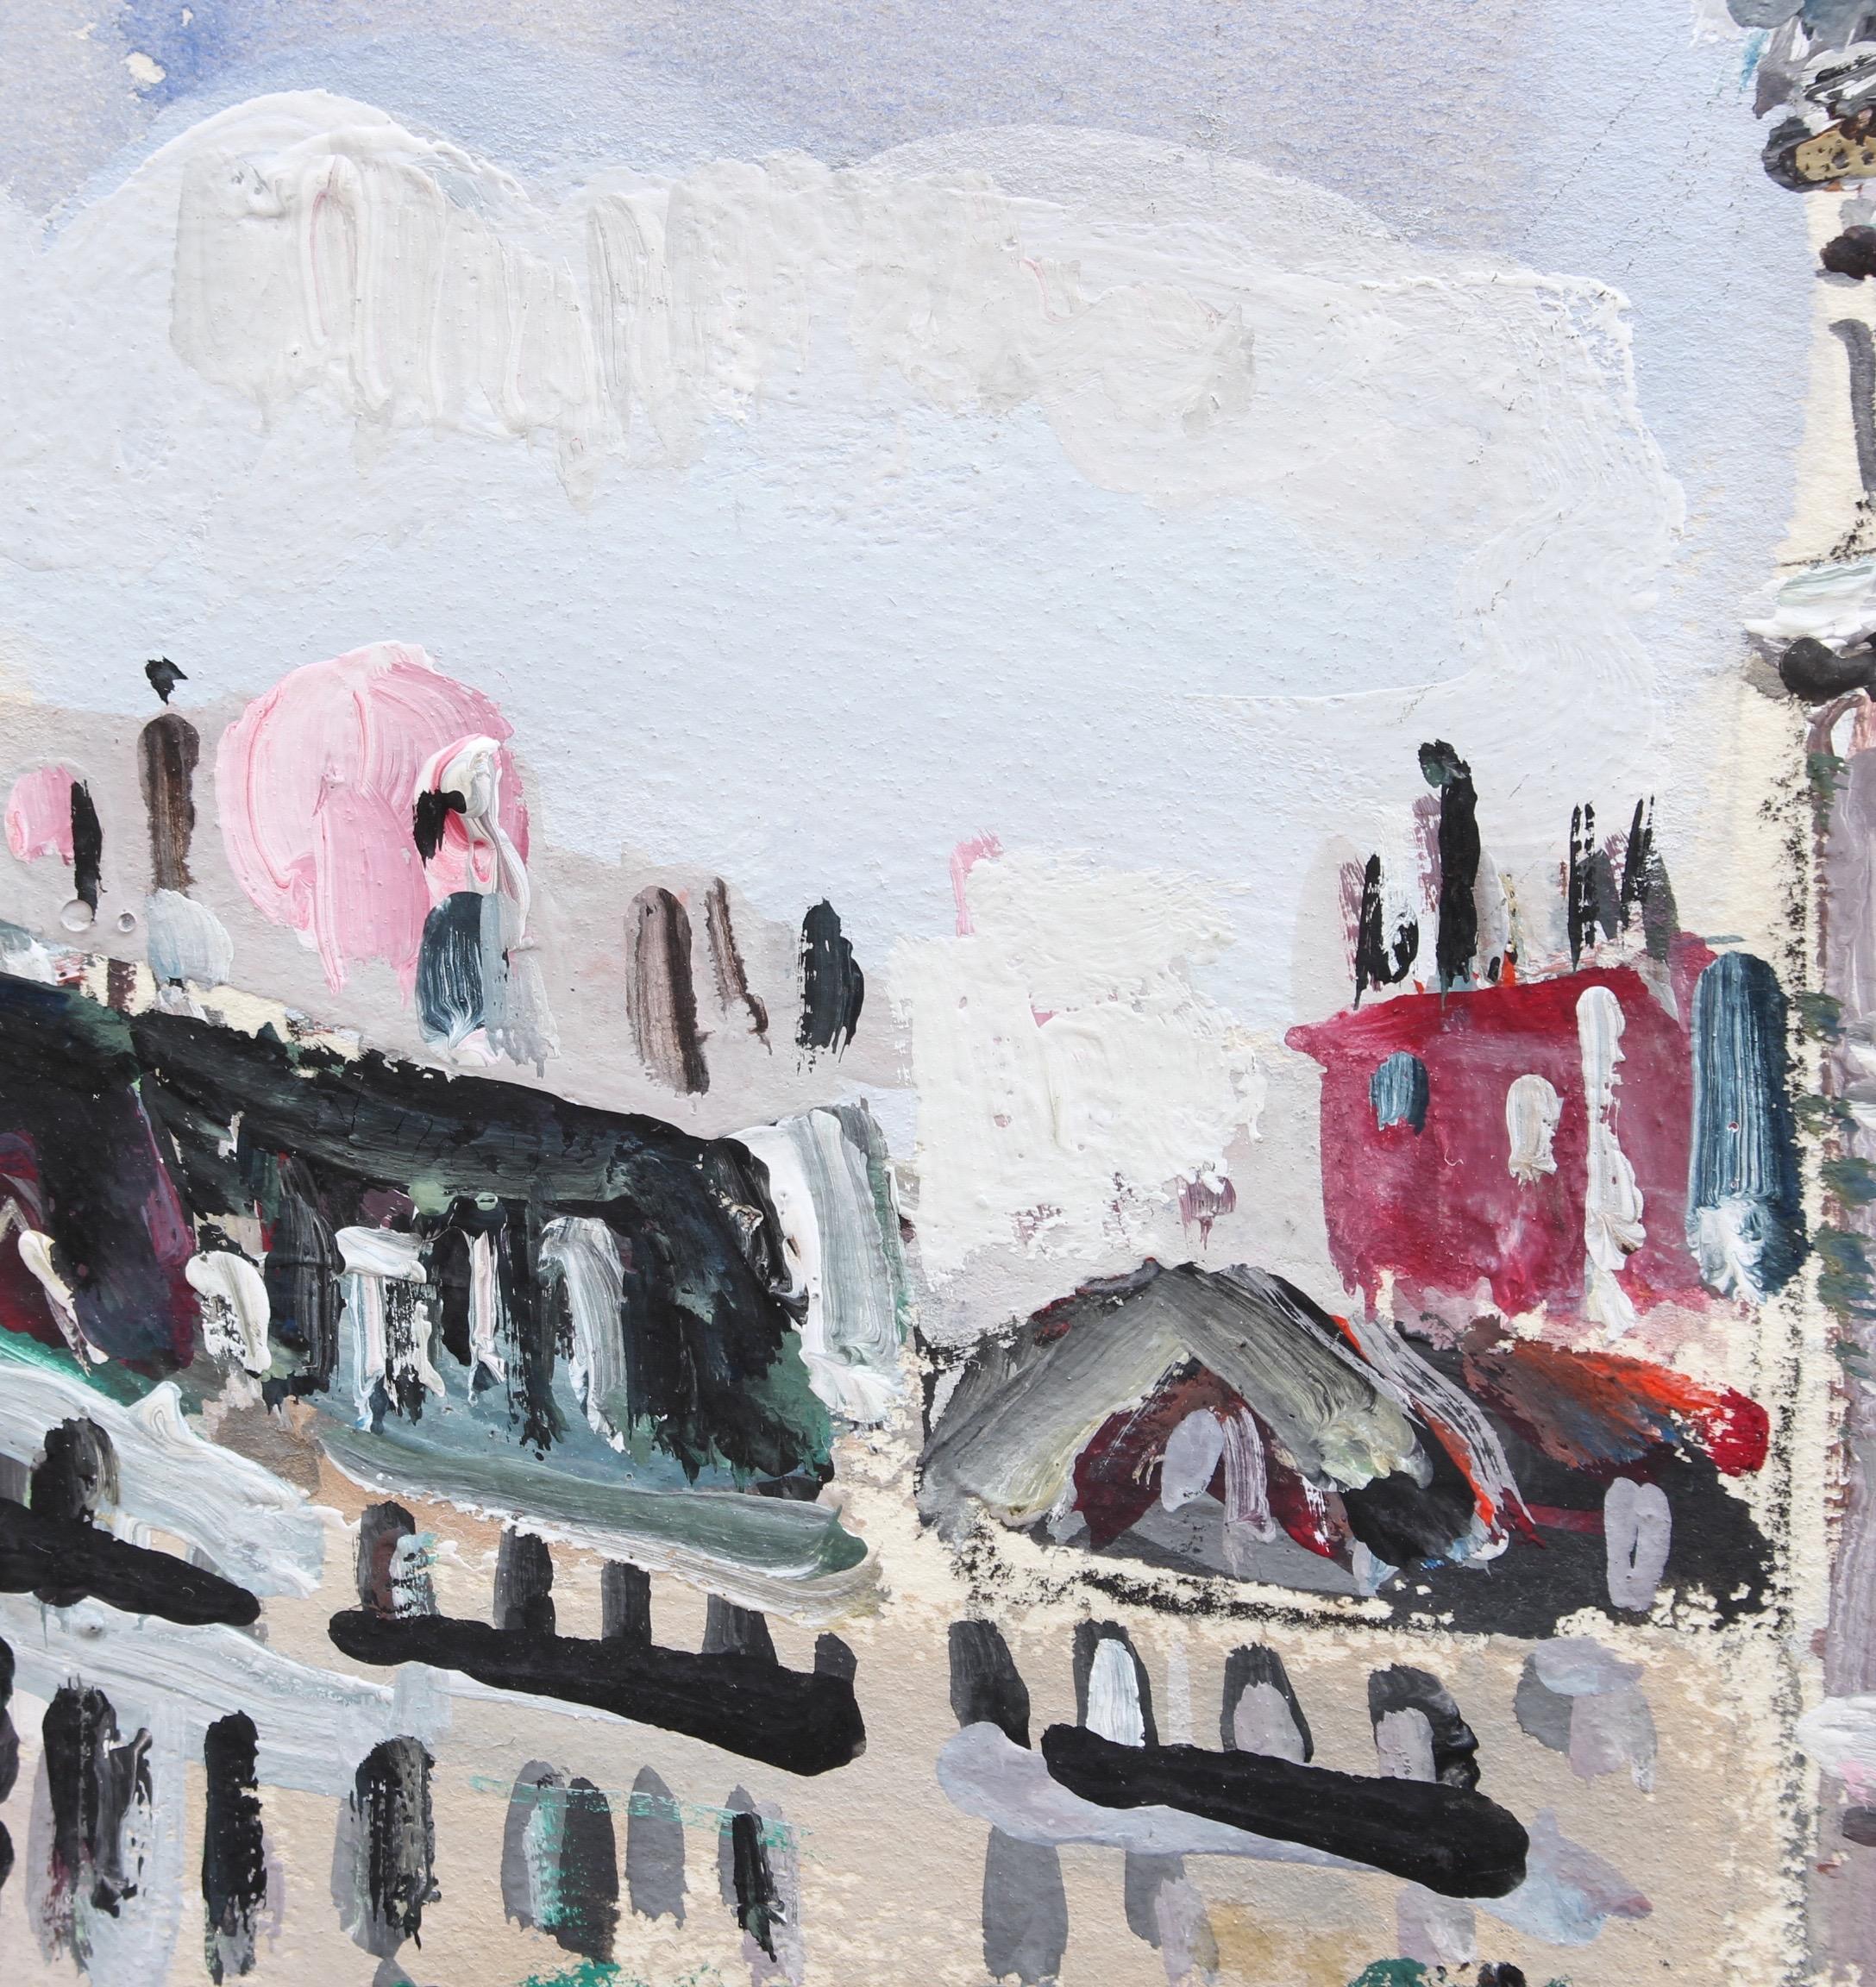 View of Saint Germain des Pres Church - Post-Impressionist Art by Lucien Génin